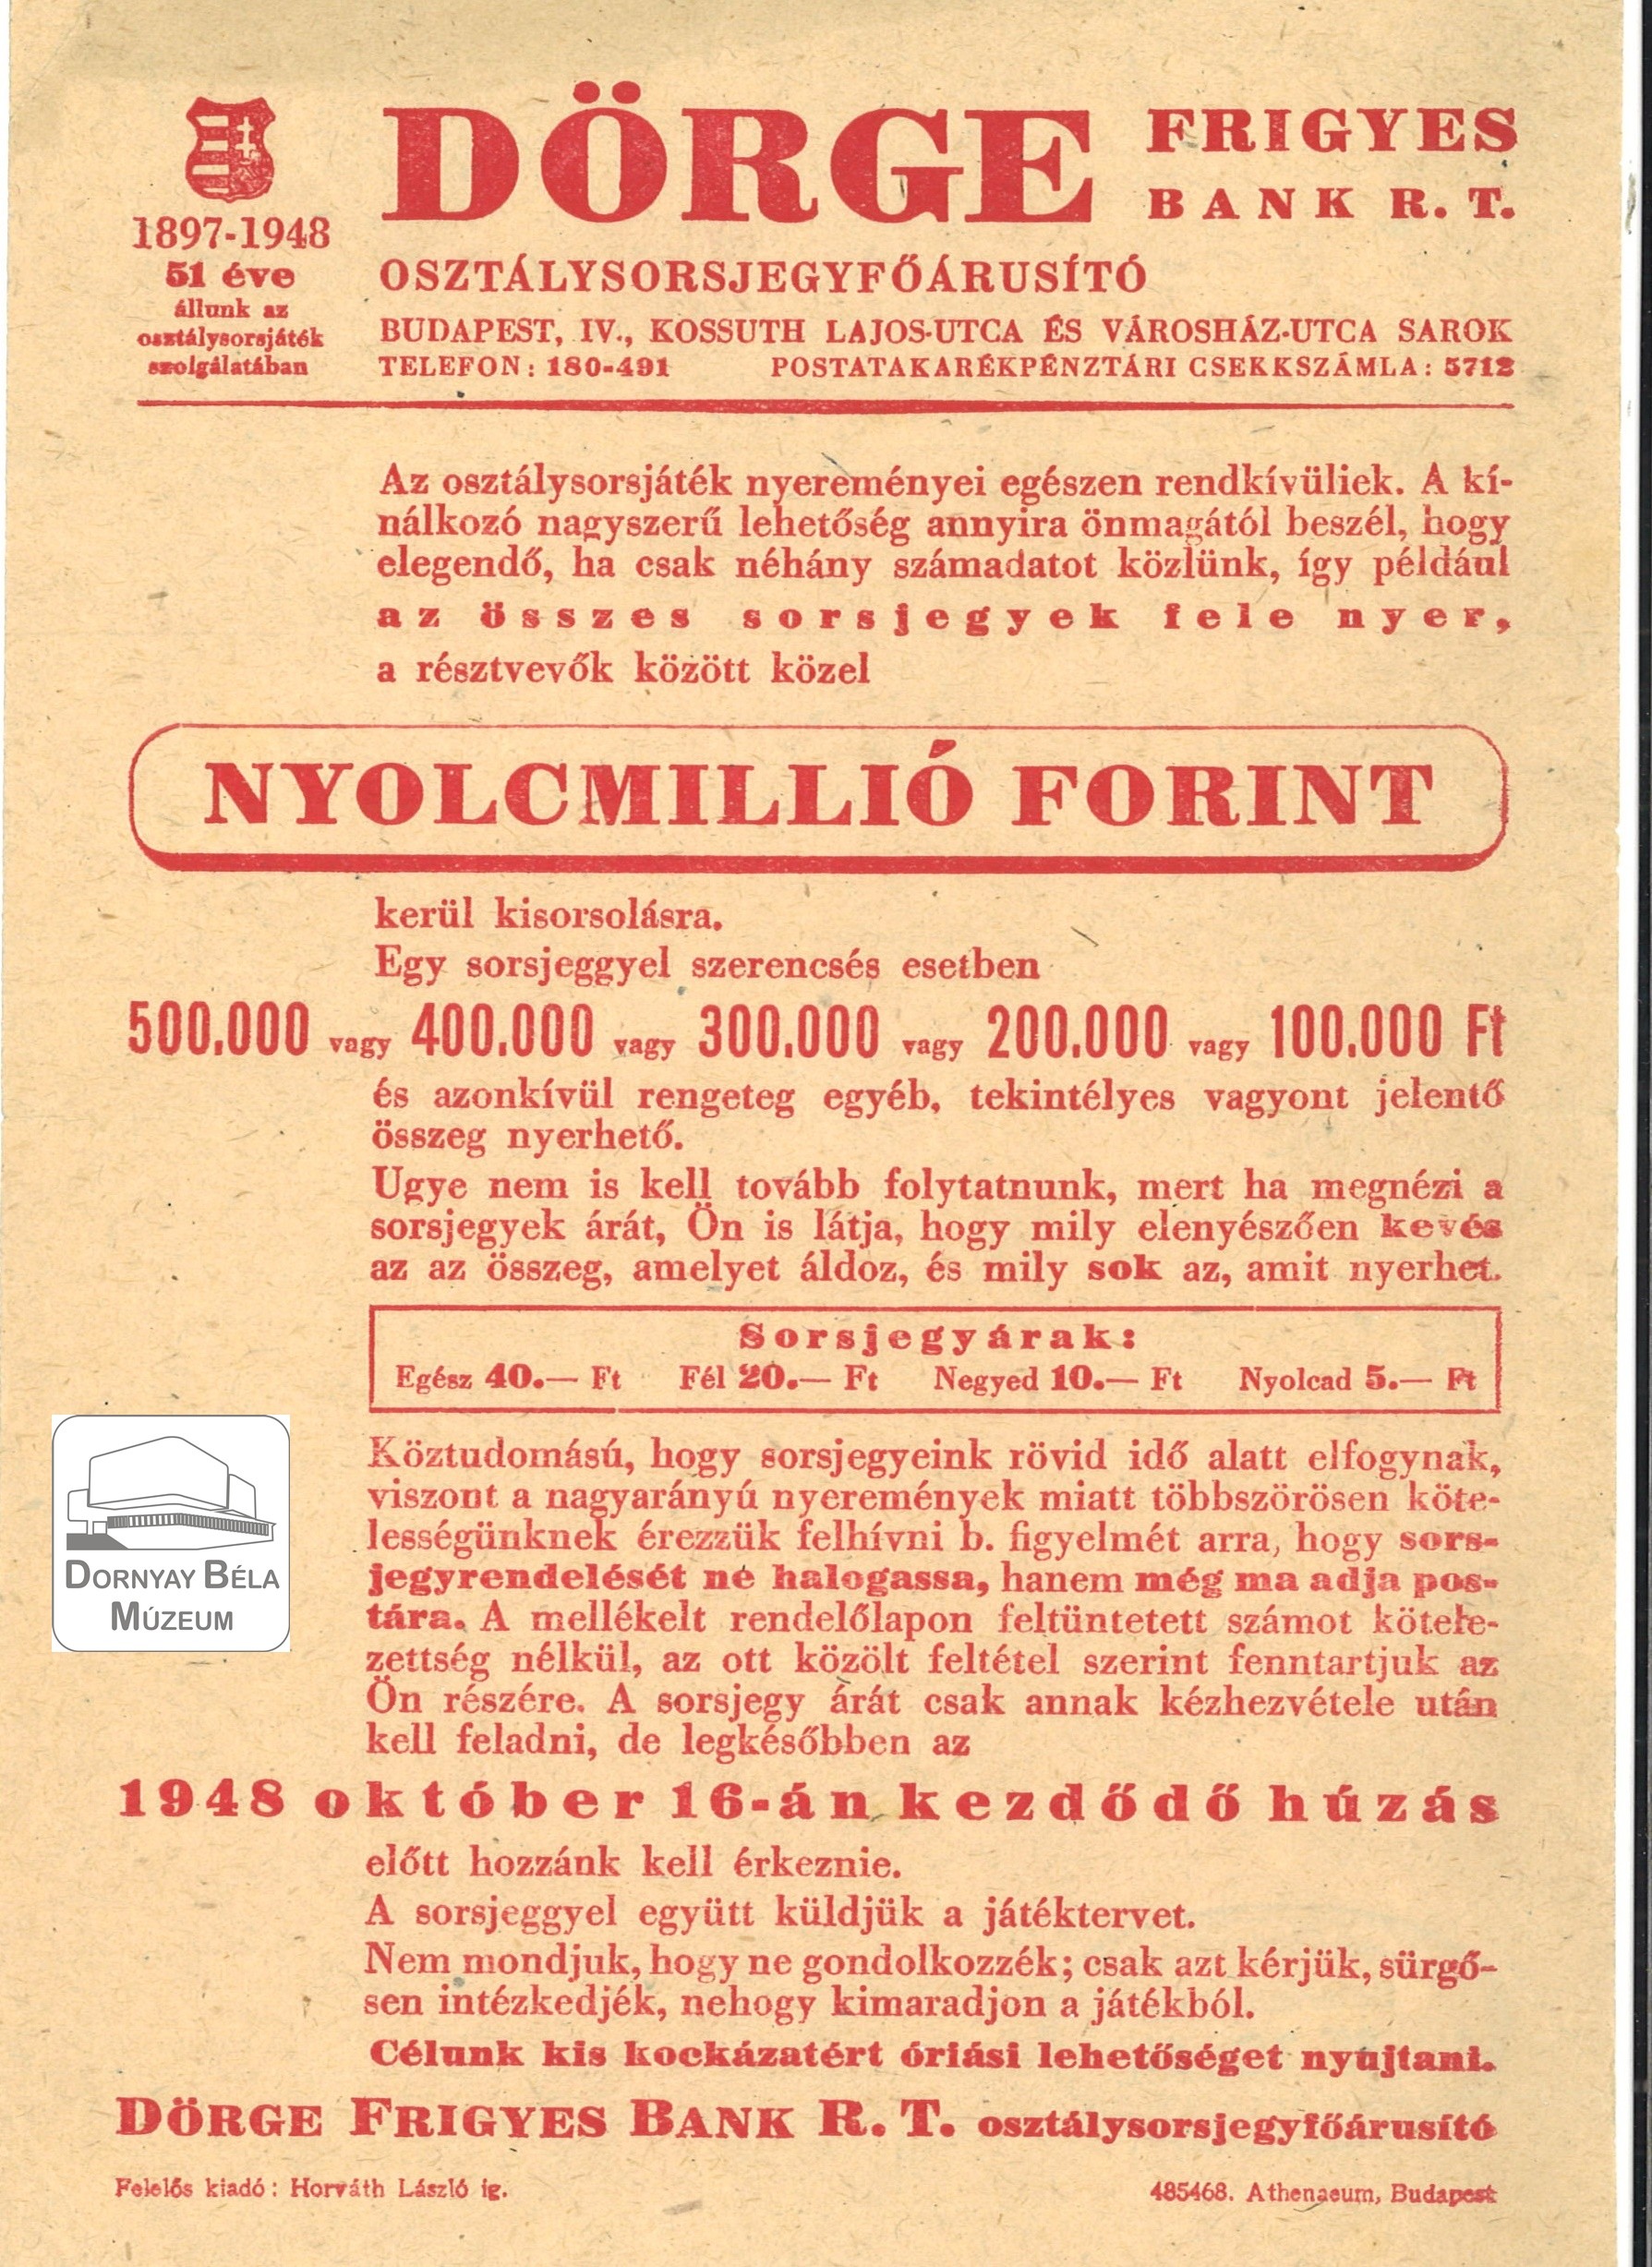 Dörge Frigyes osztály sorjegy-főárusító, sorsjegy népszerűsítési röplapja. (Dornyay Béla Múzeum, Salgótarján CC BY-NC-SA)